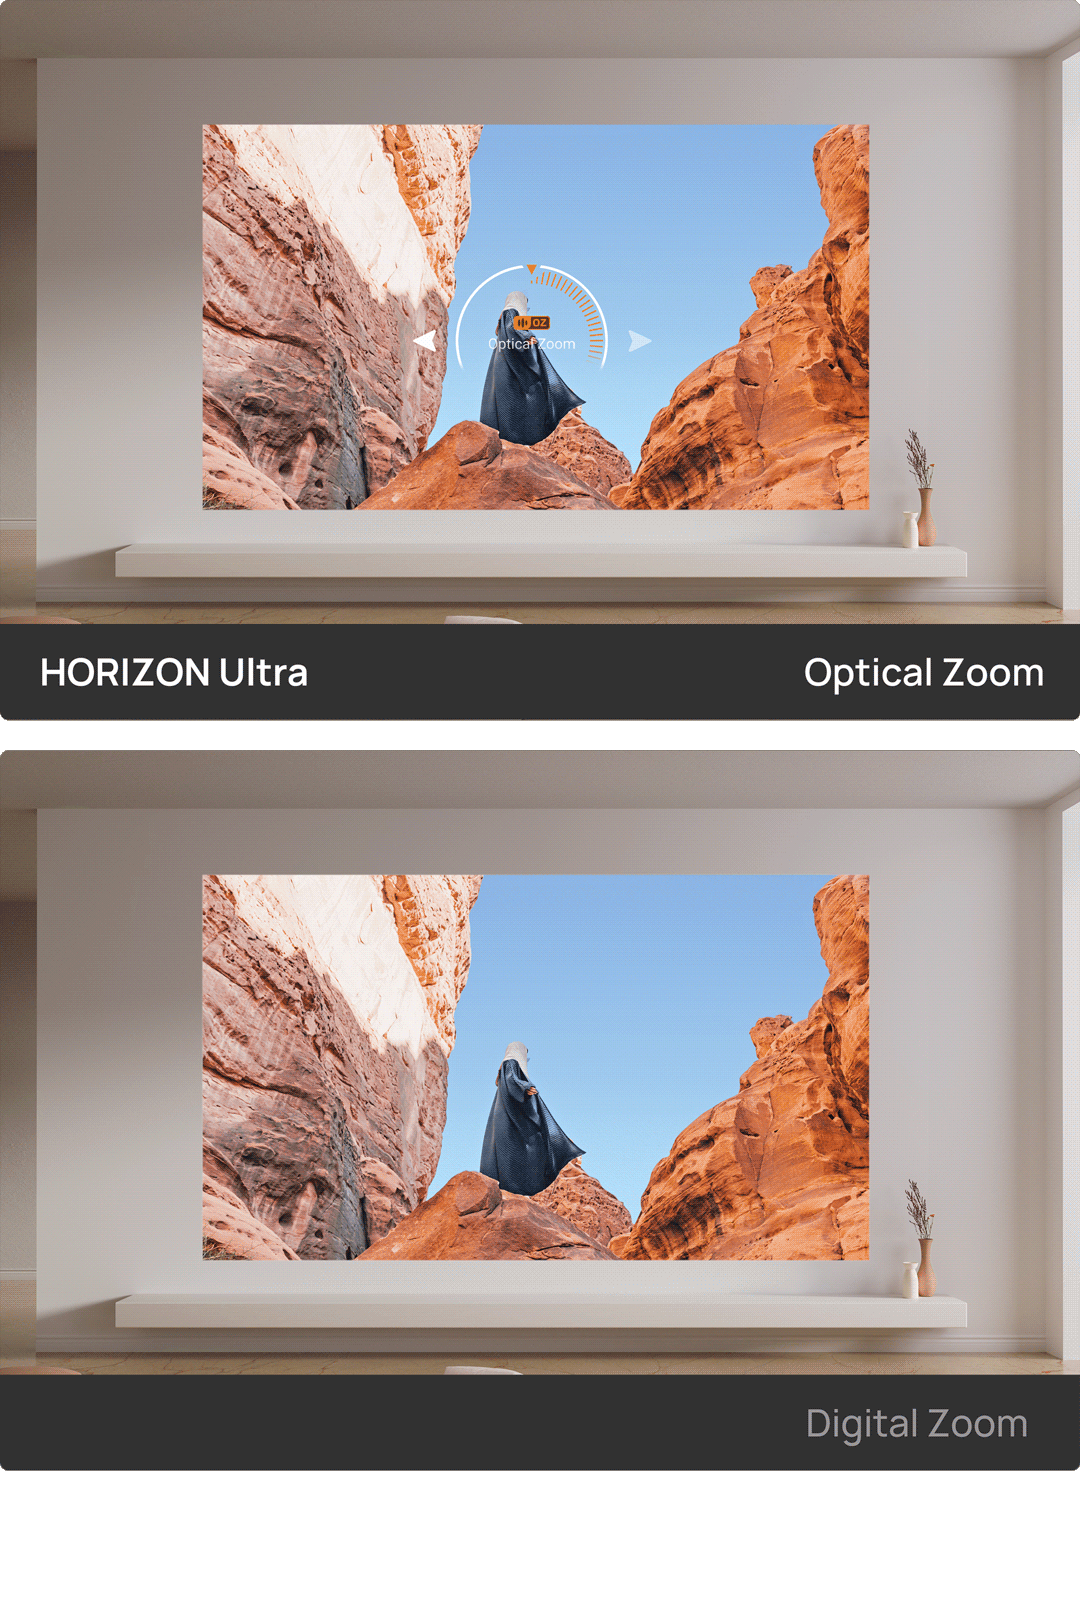  XGIMI HORIZON Ultra 4K Proyector - 100 pulgadas + Dolby Vision,  luz dual, ISA 3.0, 2300 lúmenes ISO, Android TV 11, 2x12w Harman Kardon,  zoom óptico - Proyector de cine en